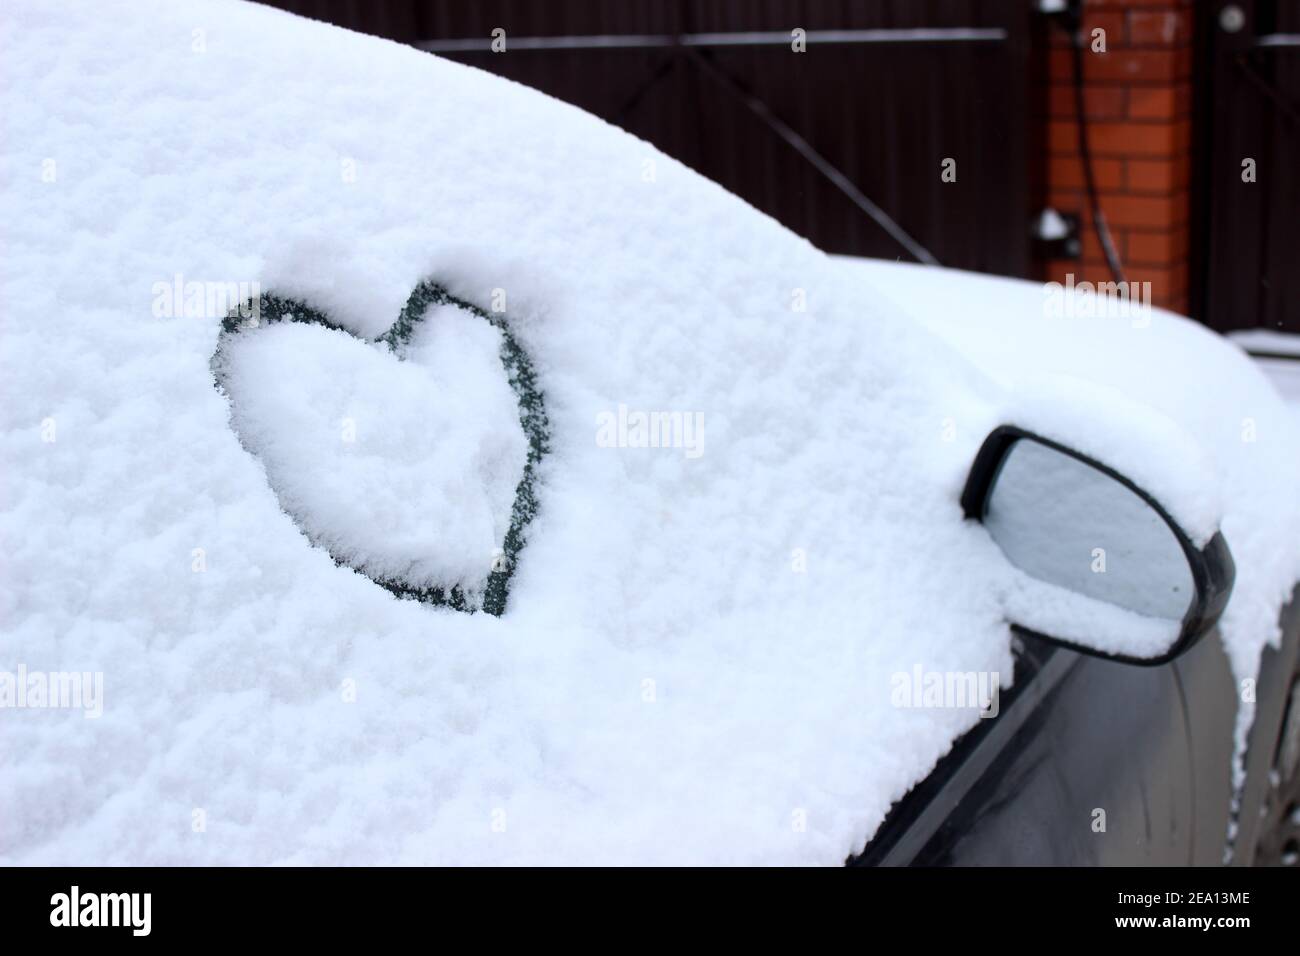 Herz gezeichnet auf dem Auto Windschutzscheibe, Staub und schmutzige  Windschutzscheibe Stockfotografie - Alamy